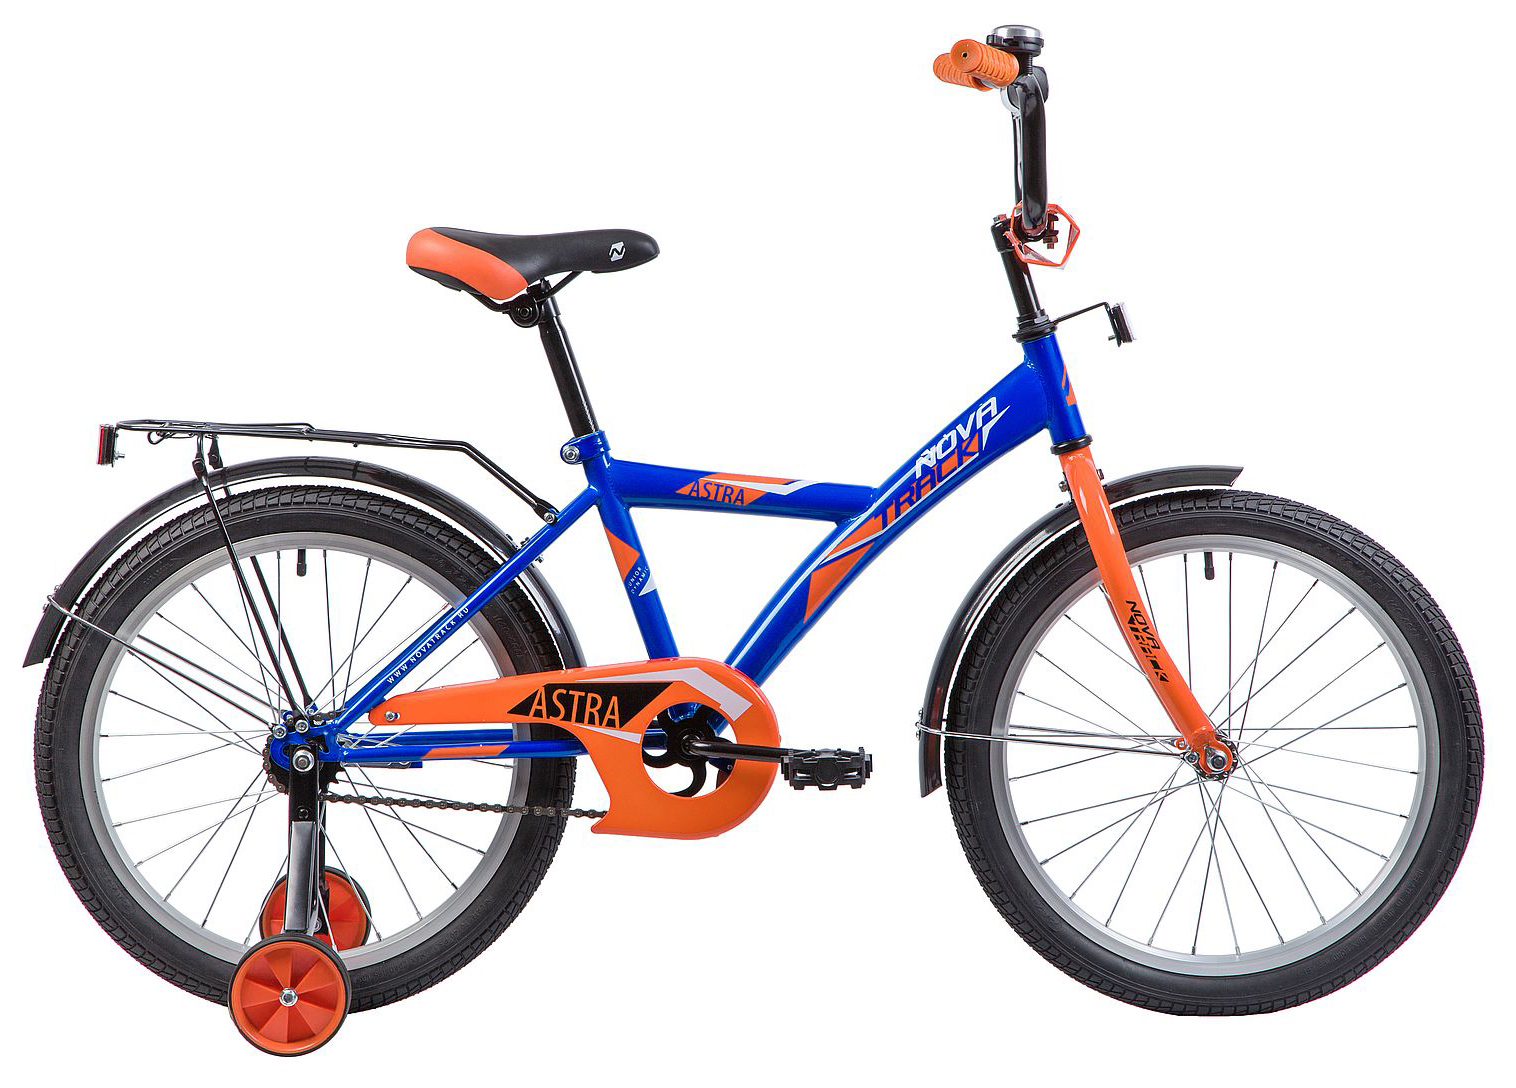  Отзывы о Детском велосипеде Novatrack Astra 20 2019